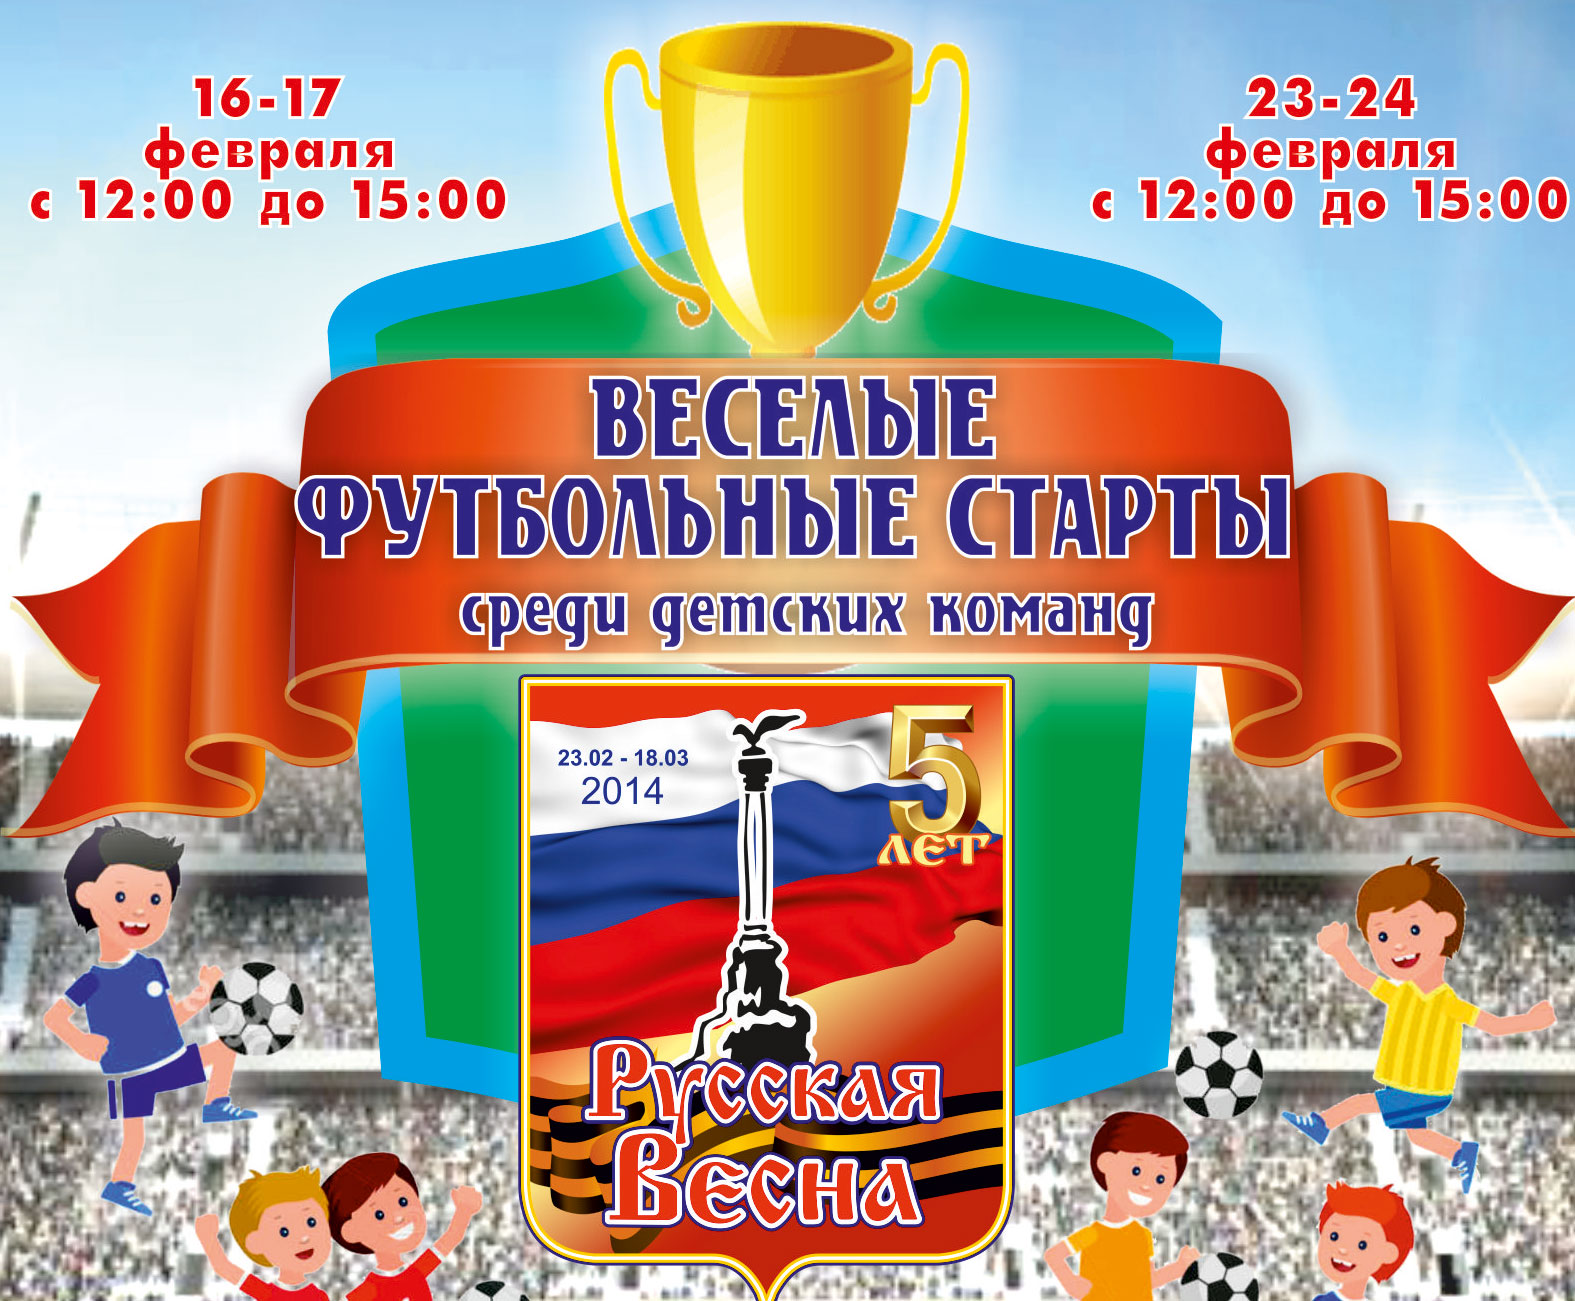 В Севастополе пройдет детский турнир по мини-футболу «Веселые футбольные старты»